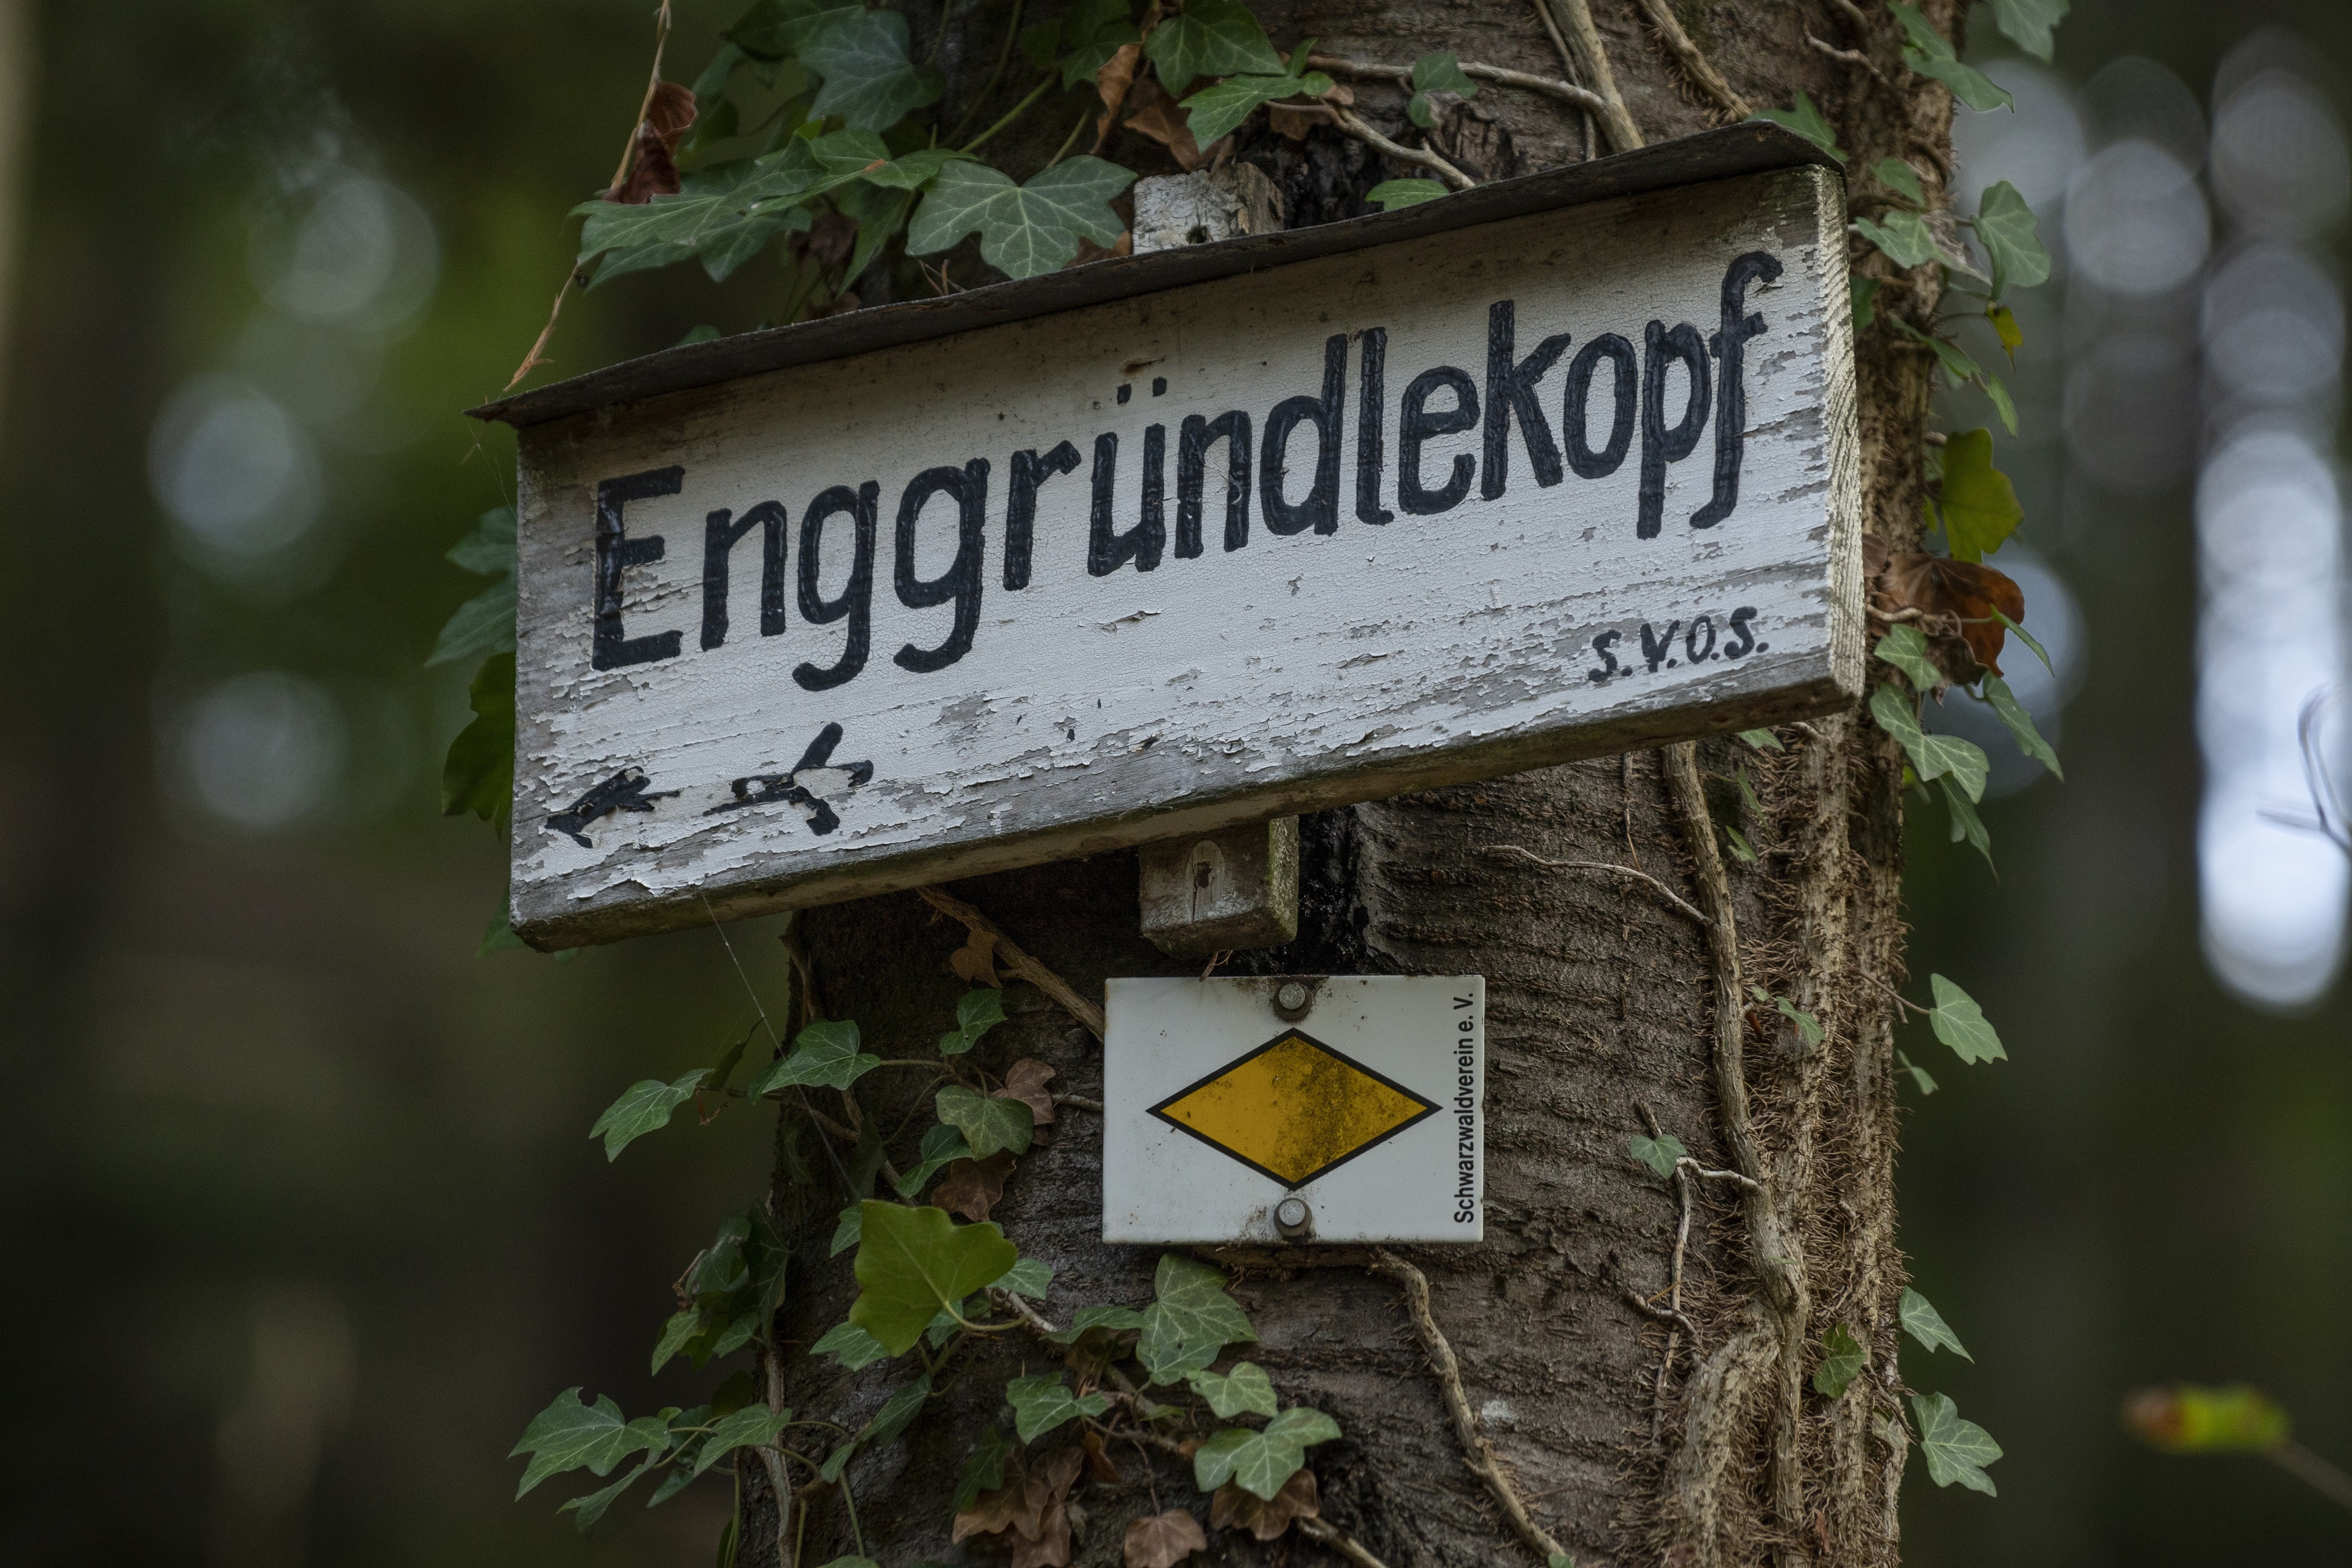 Herzhafte Tour zur Enggründlekopf-Hütte